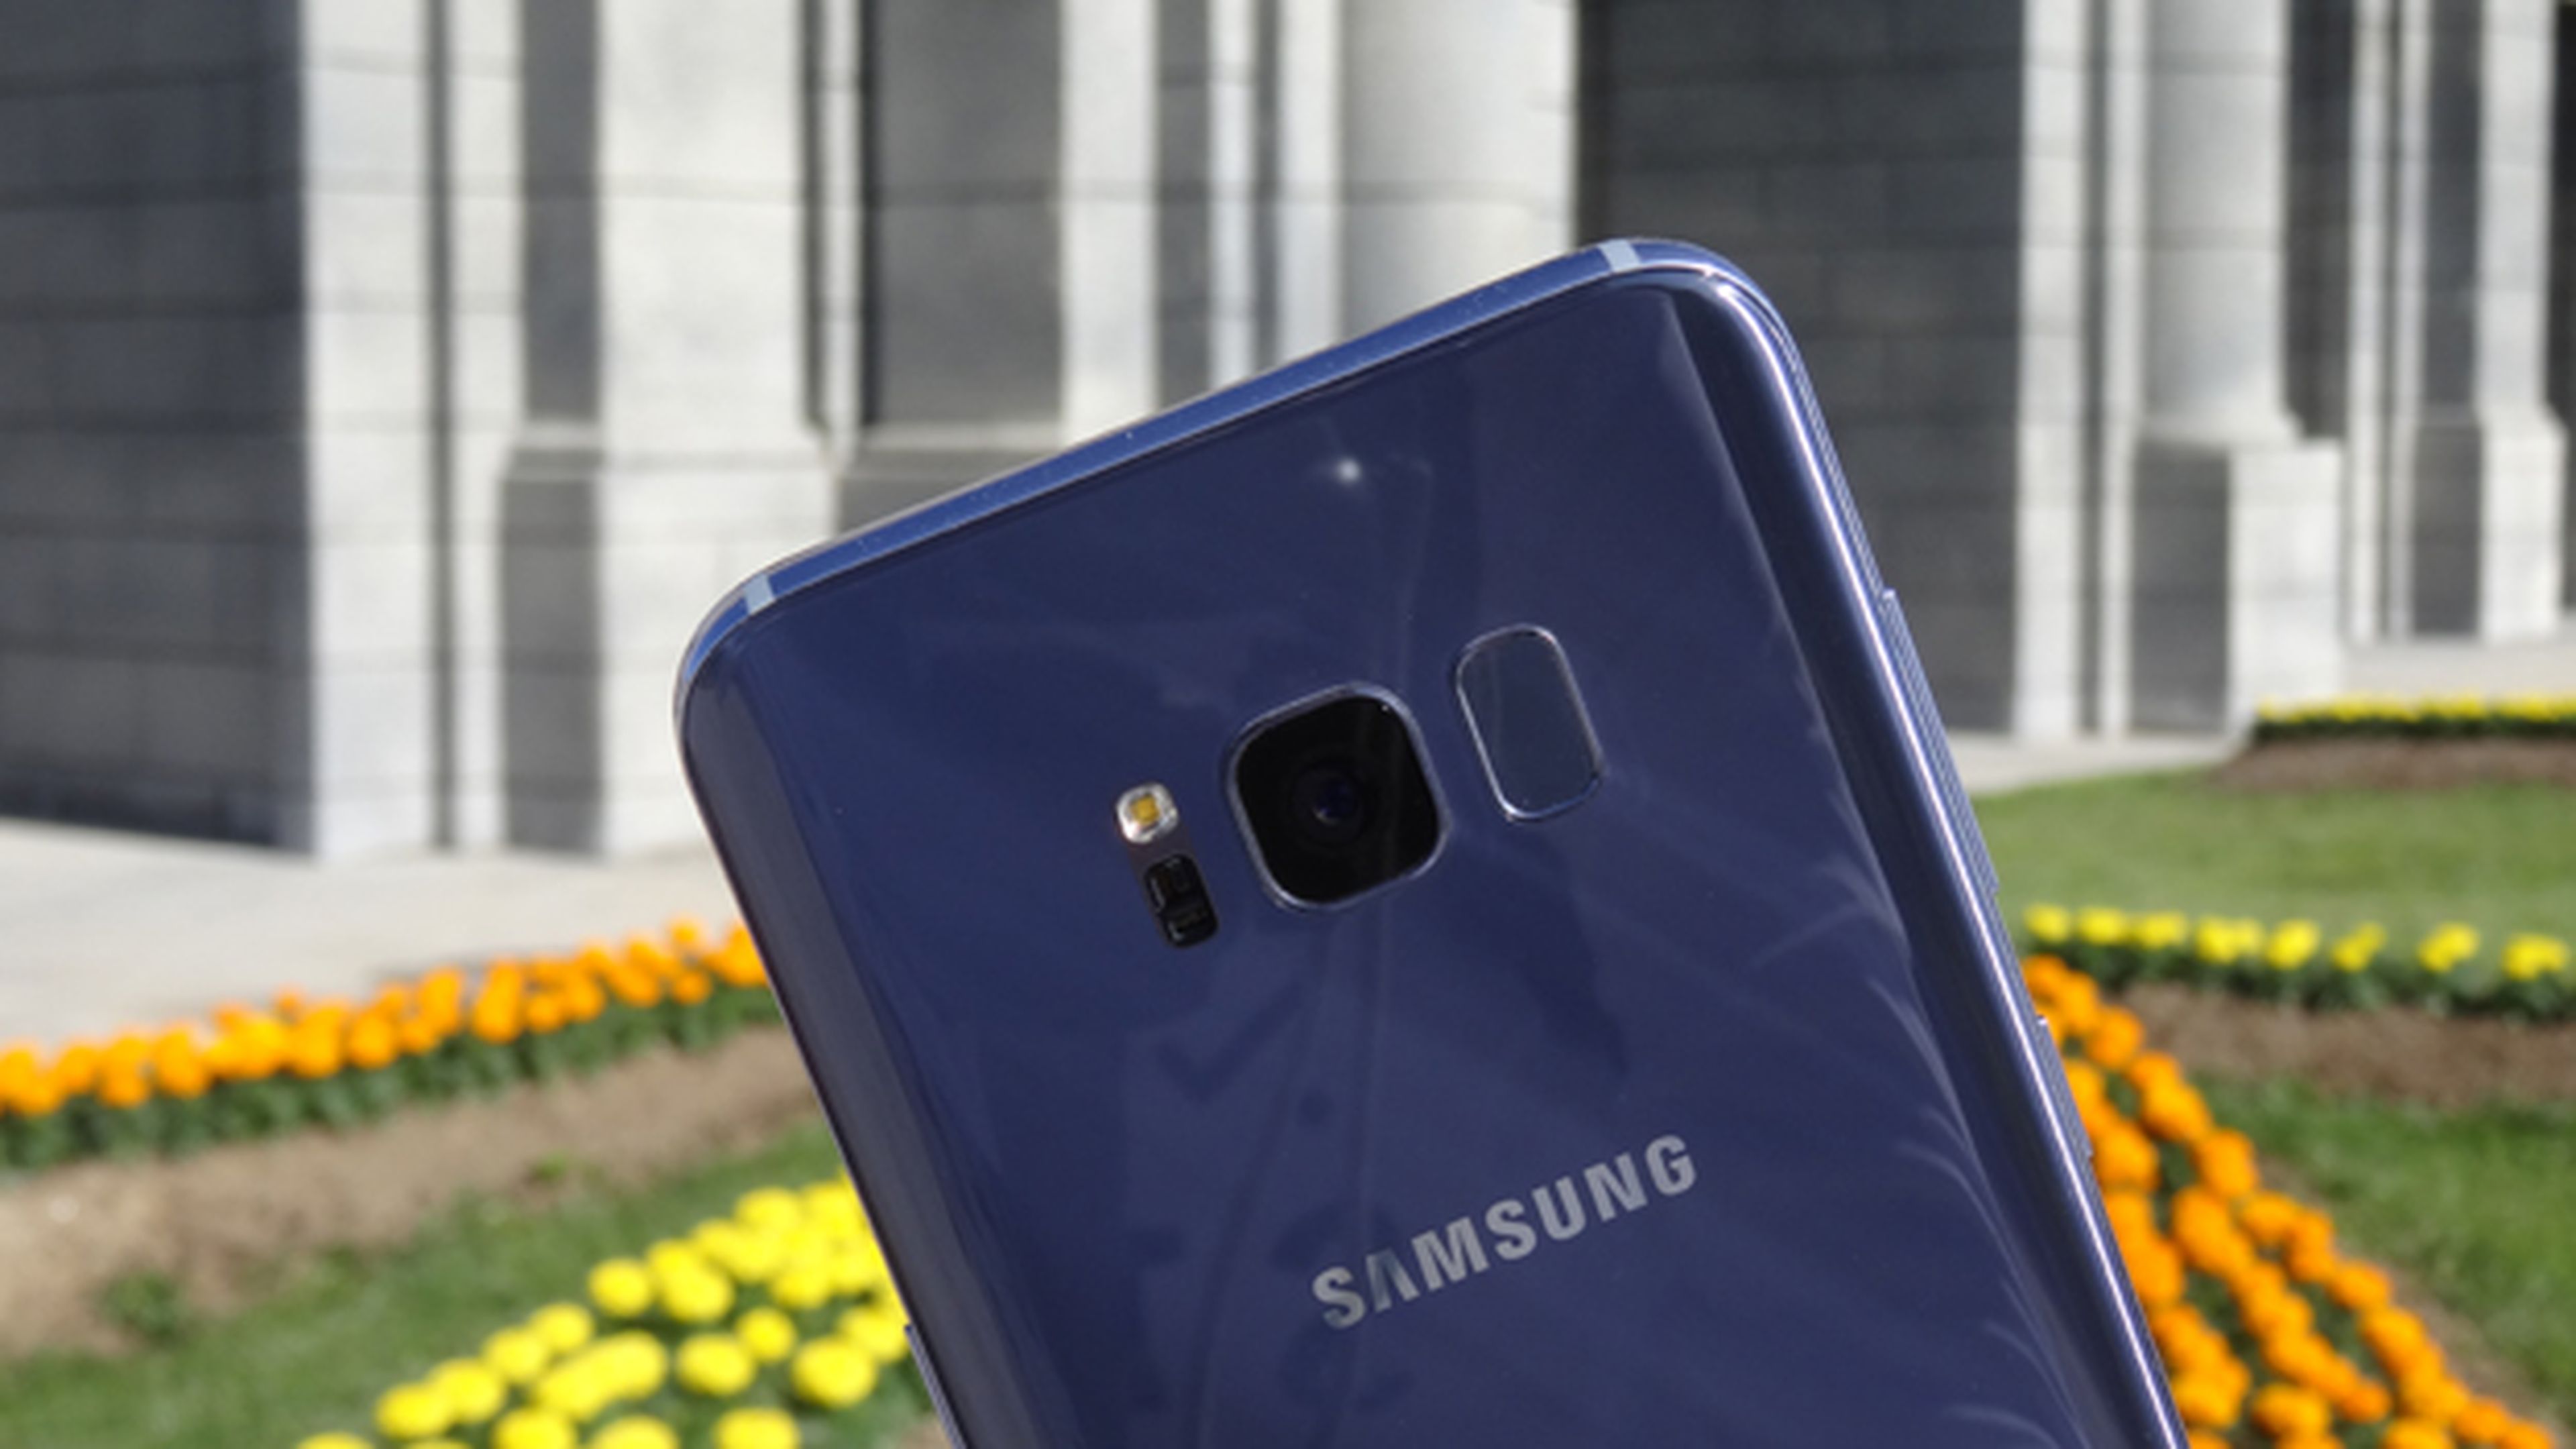 Cámara del Samsung Galaxy S8+, análisis y opiniones